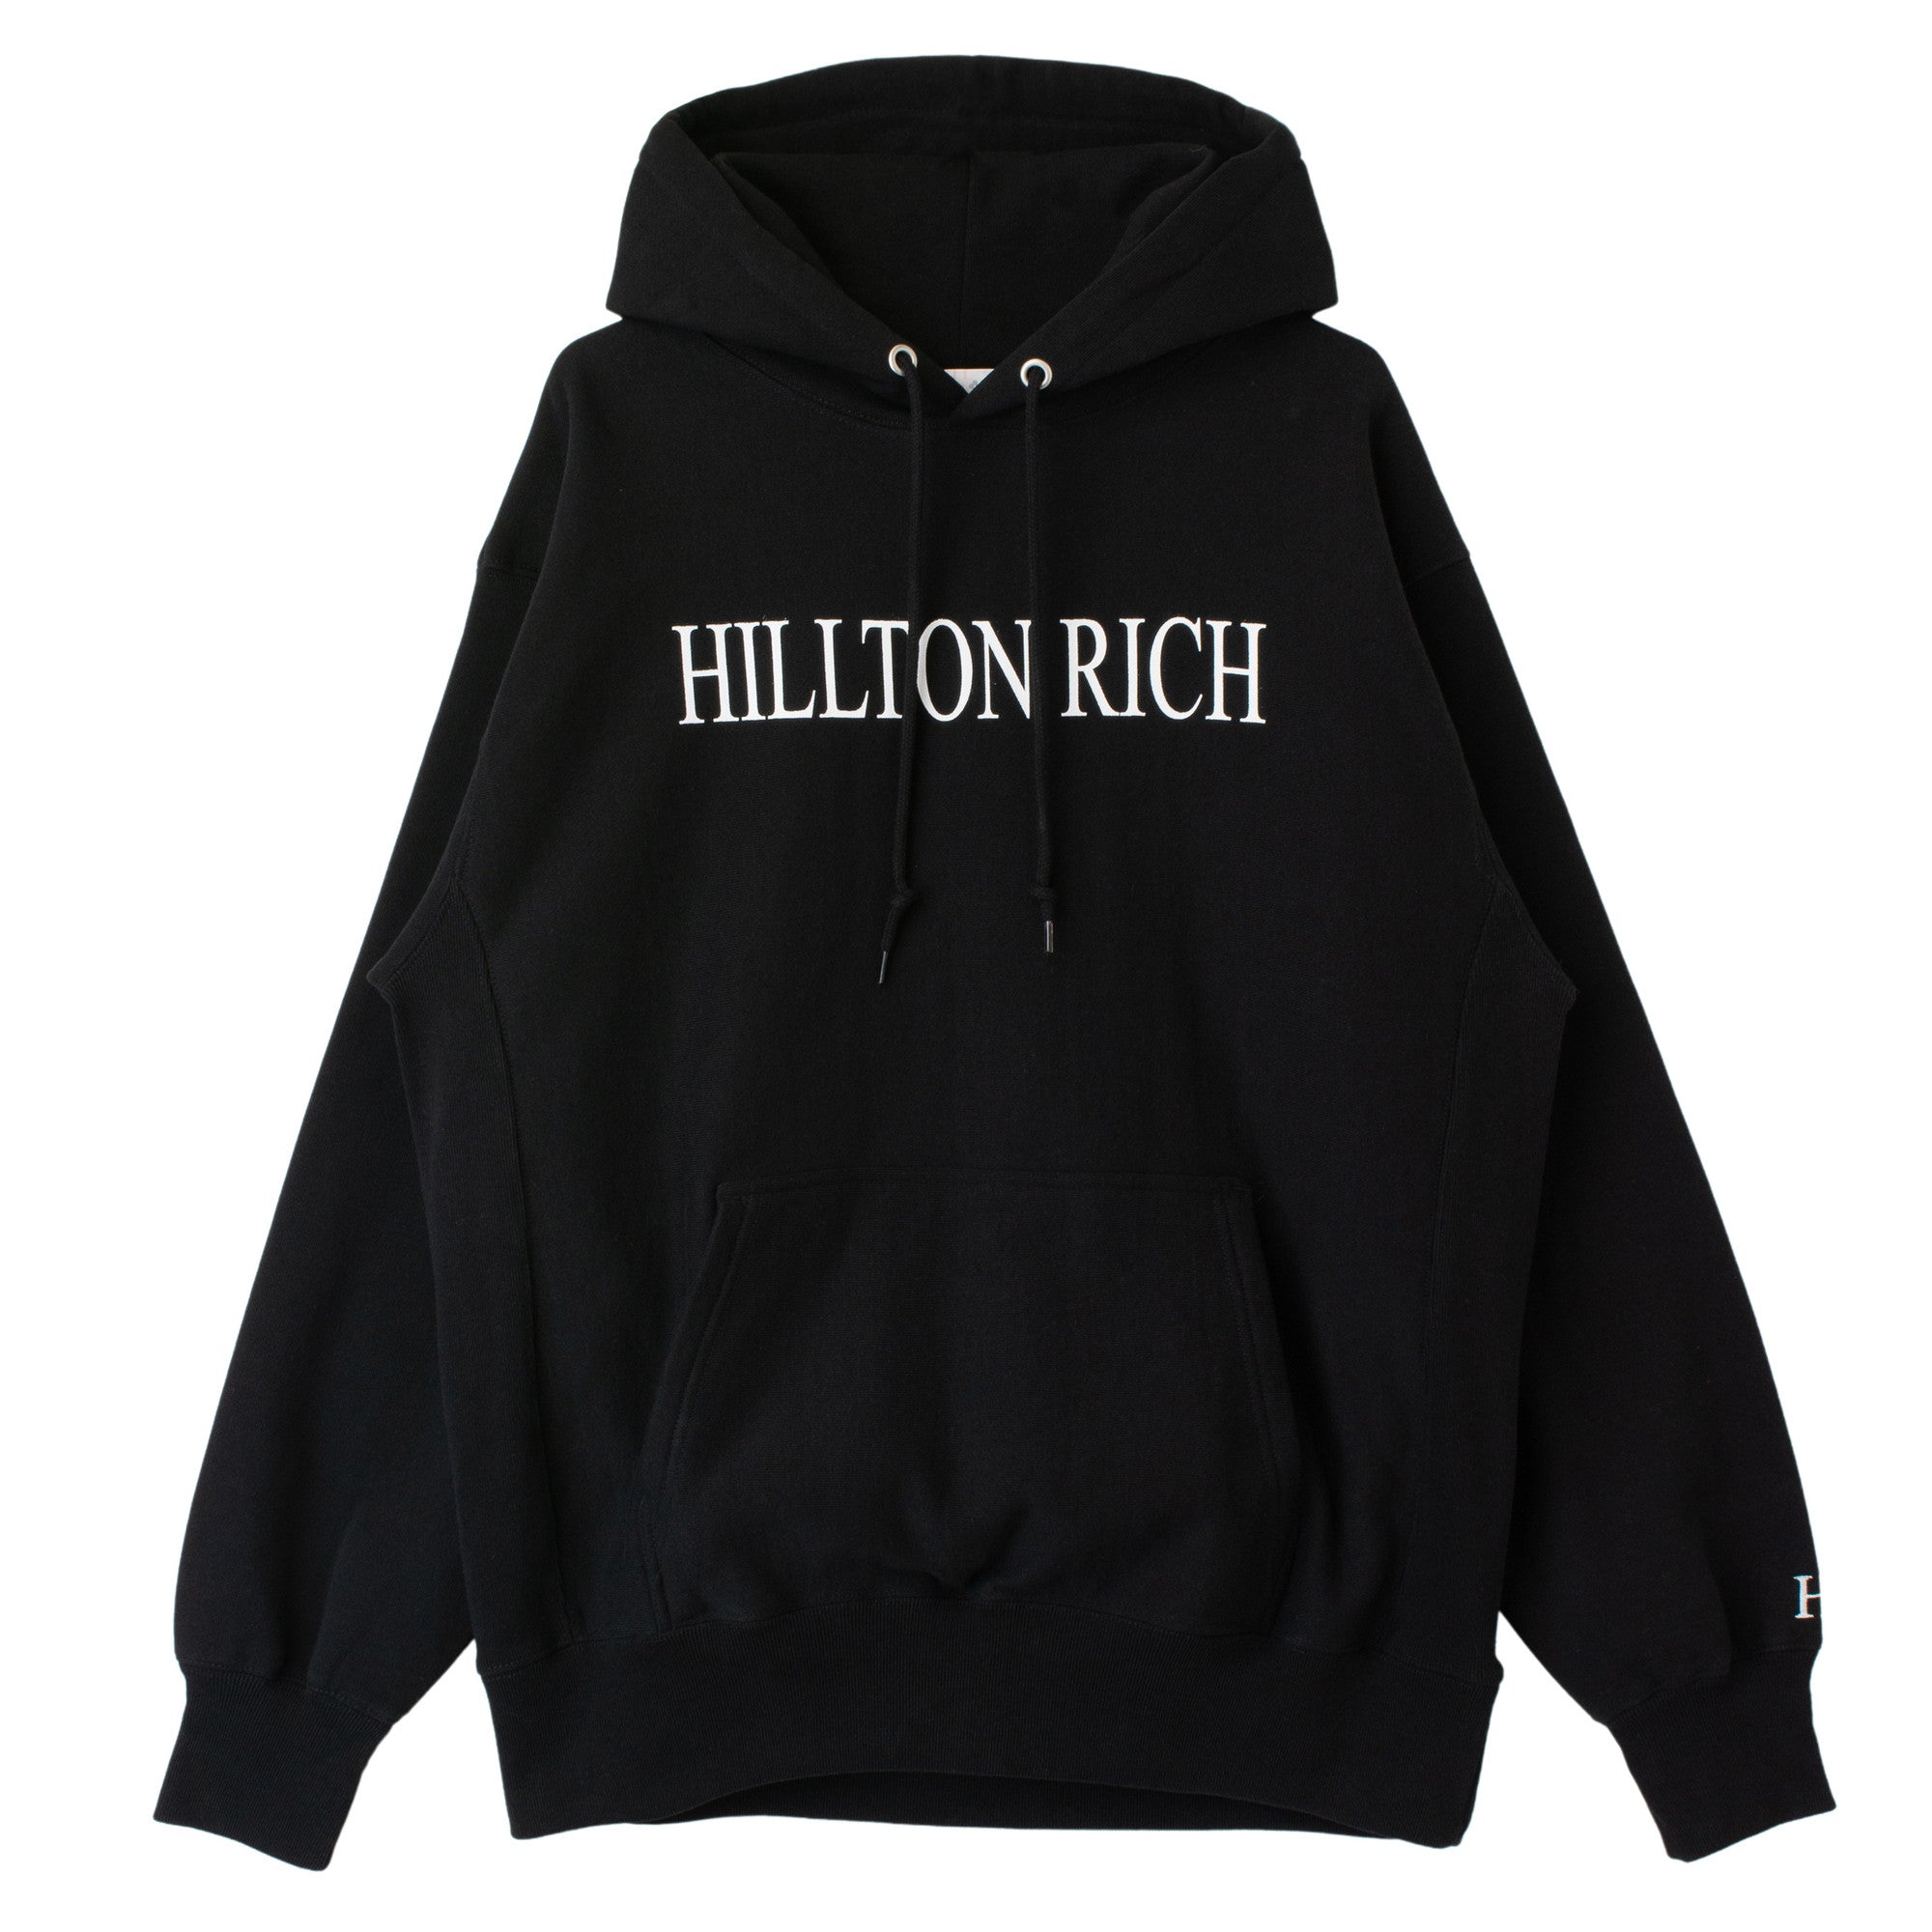 HILLTON RICH ヒルトンリッチ ロゴNOPARIS ブラック パーカー(裏起毛)